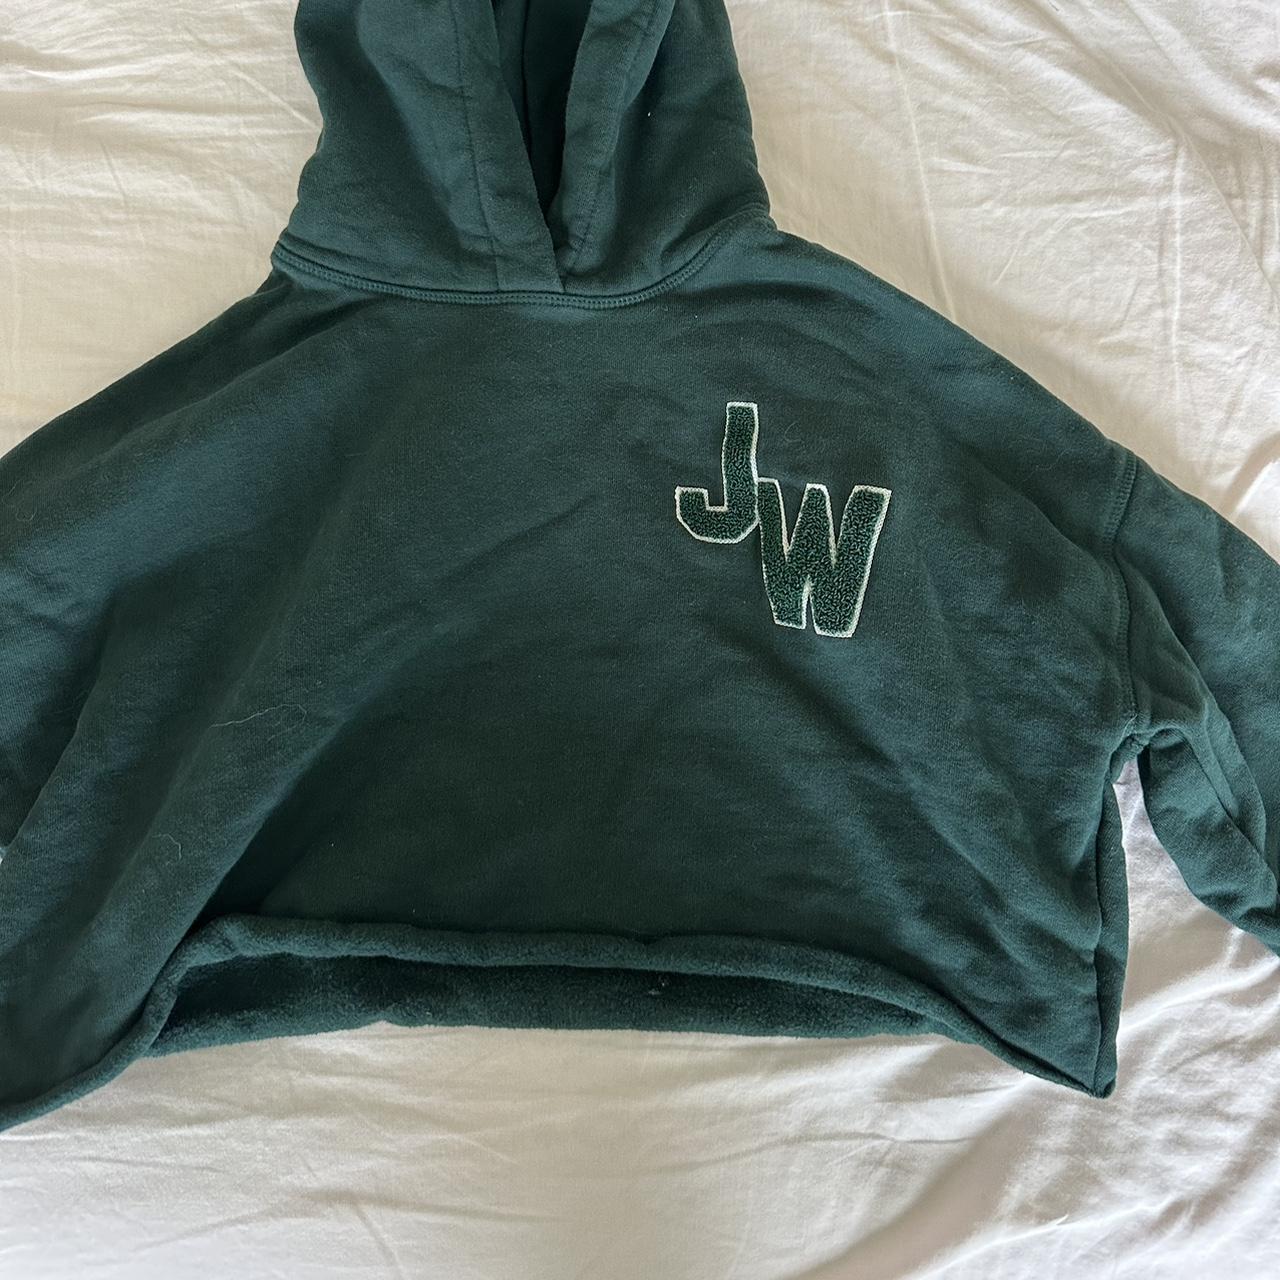 Jack Wills Women's Green Sweatshirt